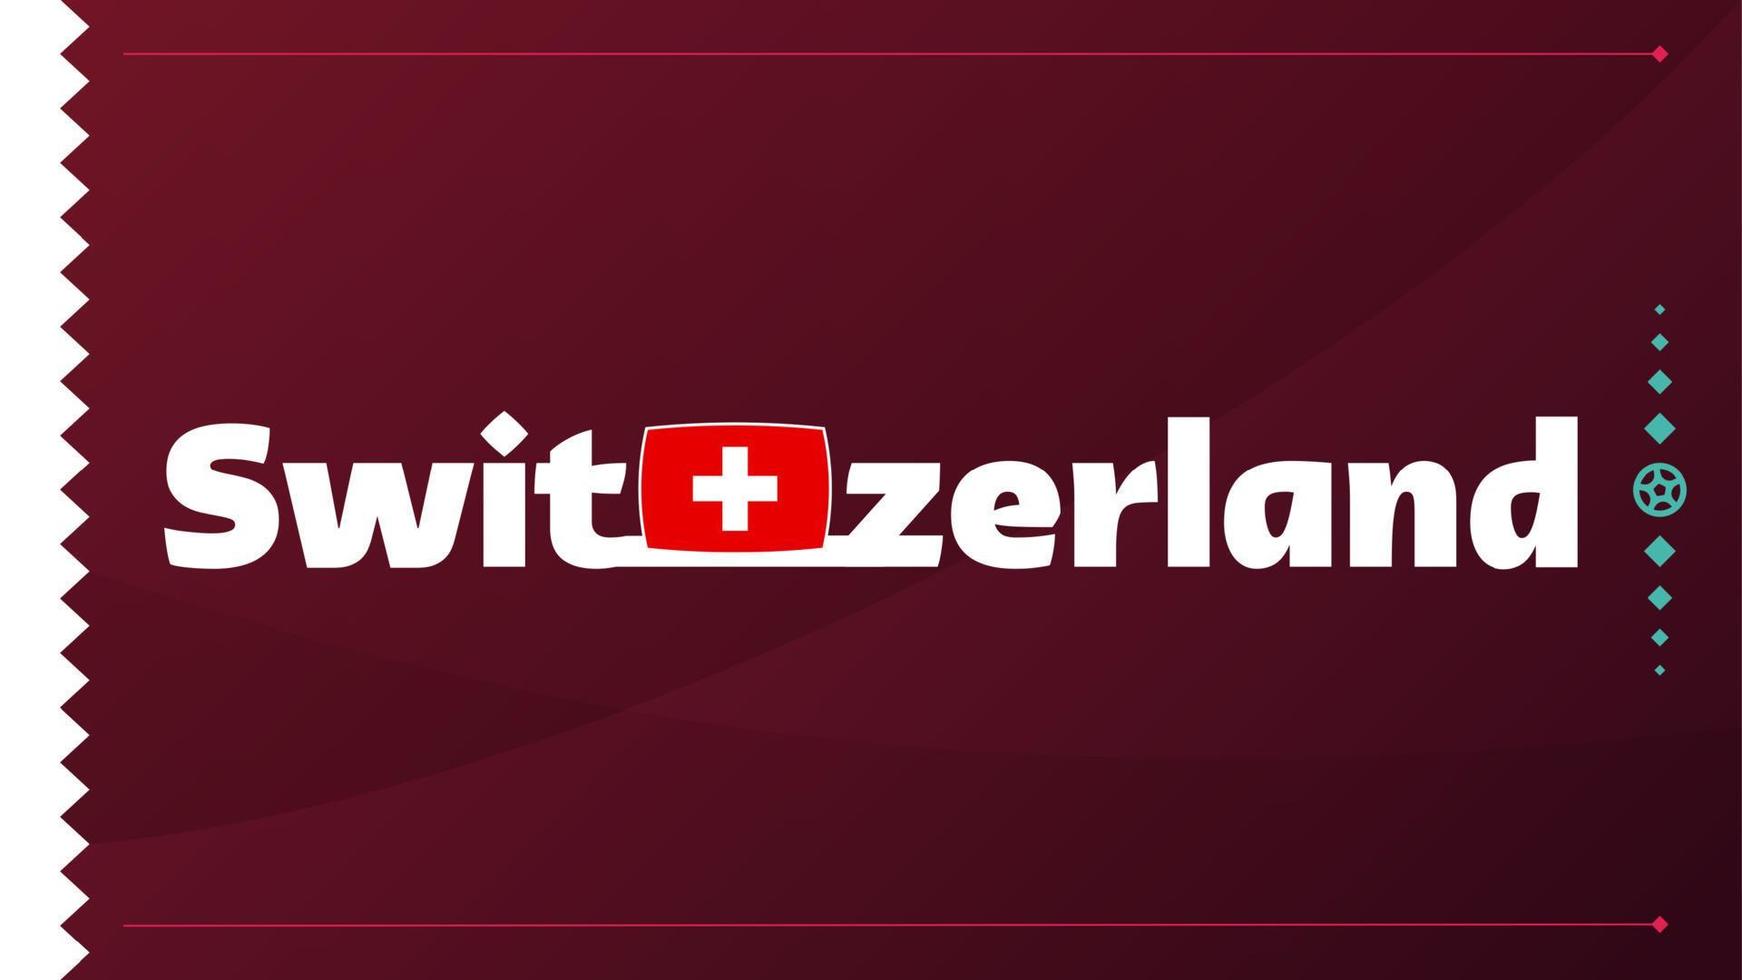 drapeau suisse et texte sur fond de tournoi de football 2022. modèle de football illustration vectorielle pour bannière, carte, site Web. drapeau national suisse vecteur